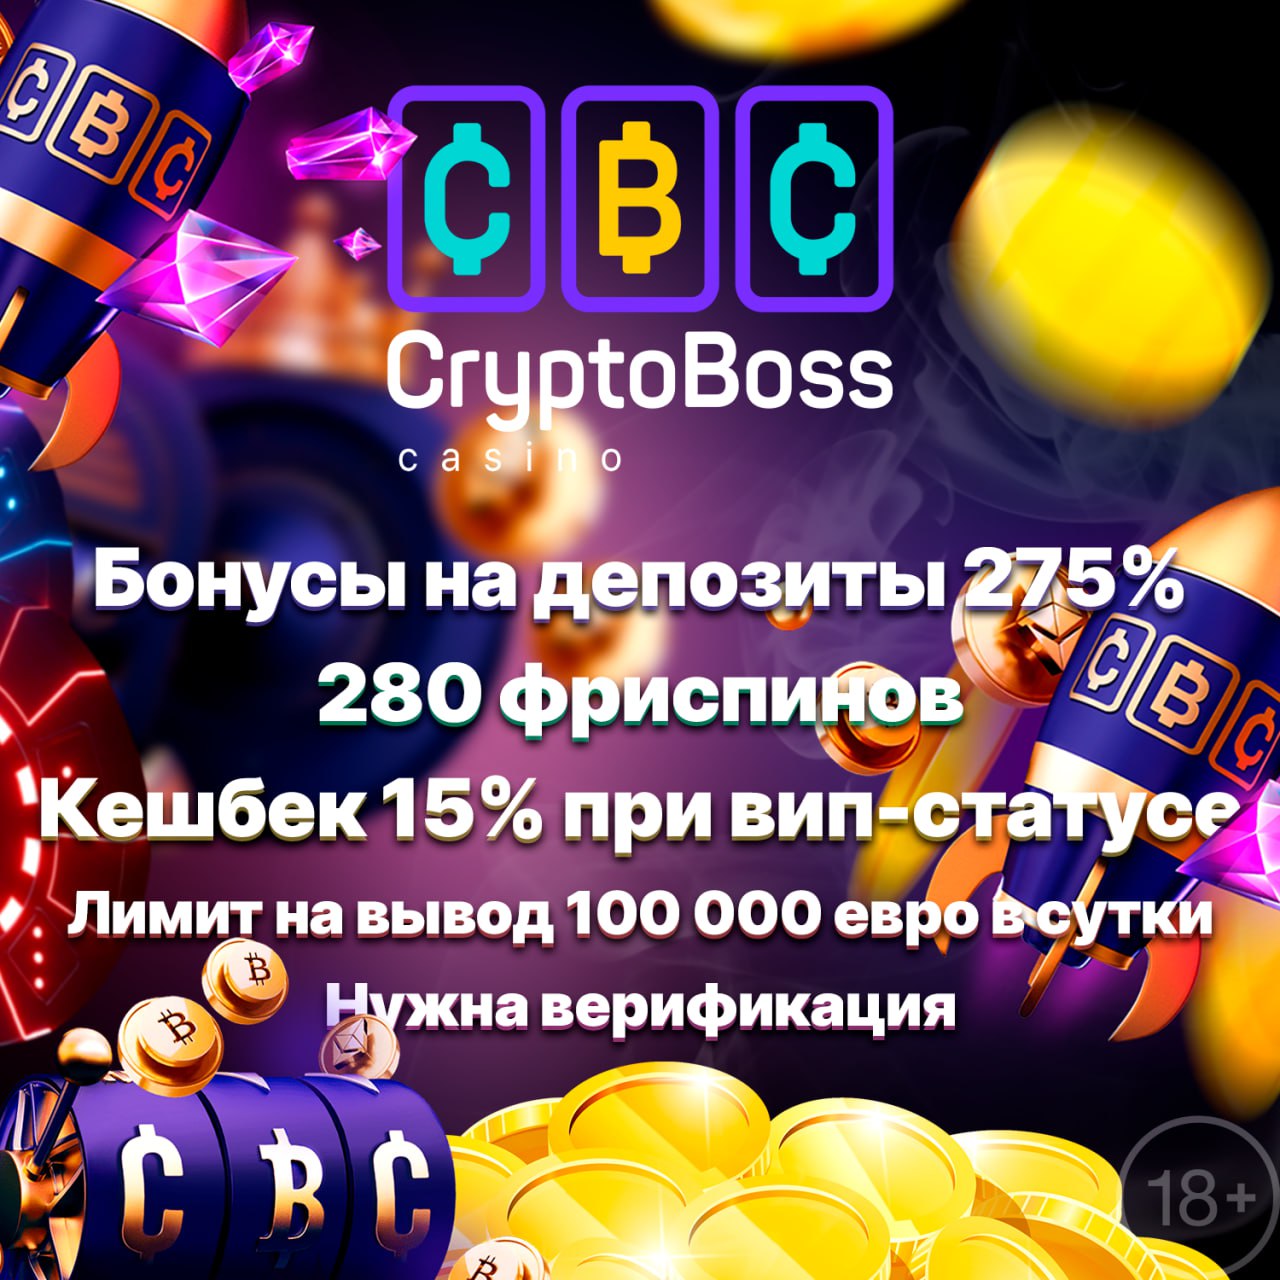 Cryptoboss casino бонусы cryptoboss casino 2 live